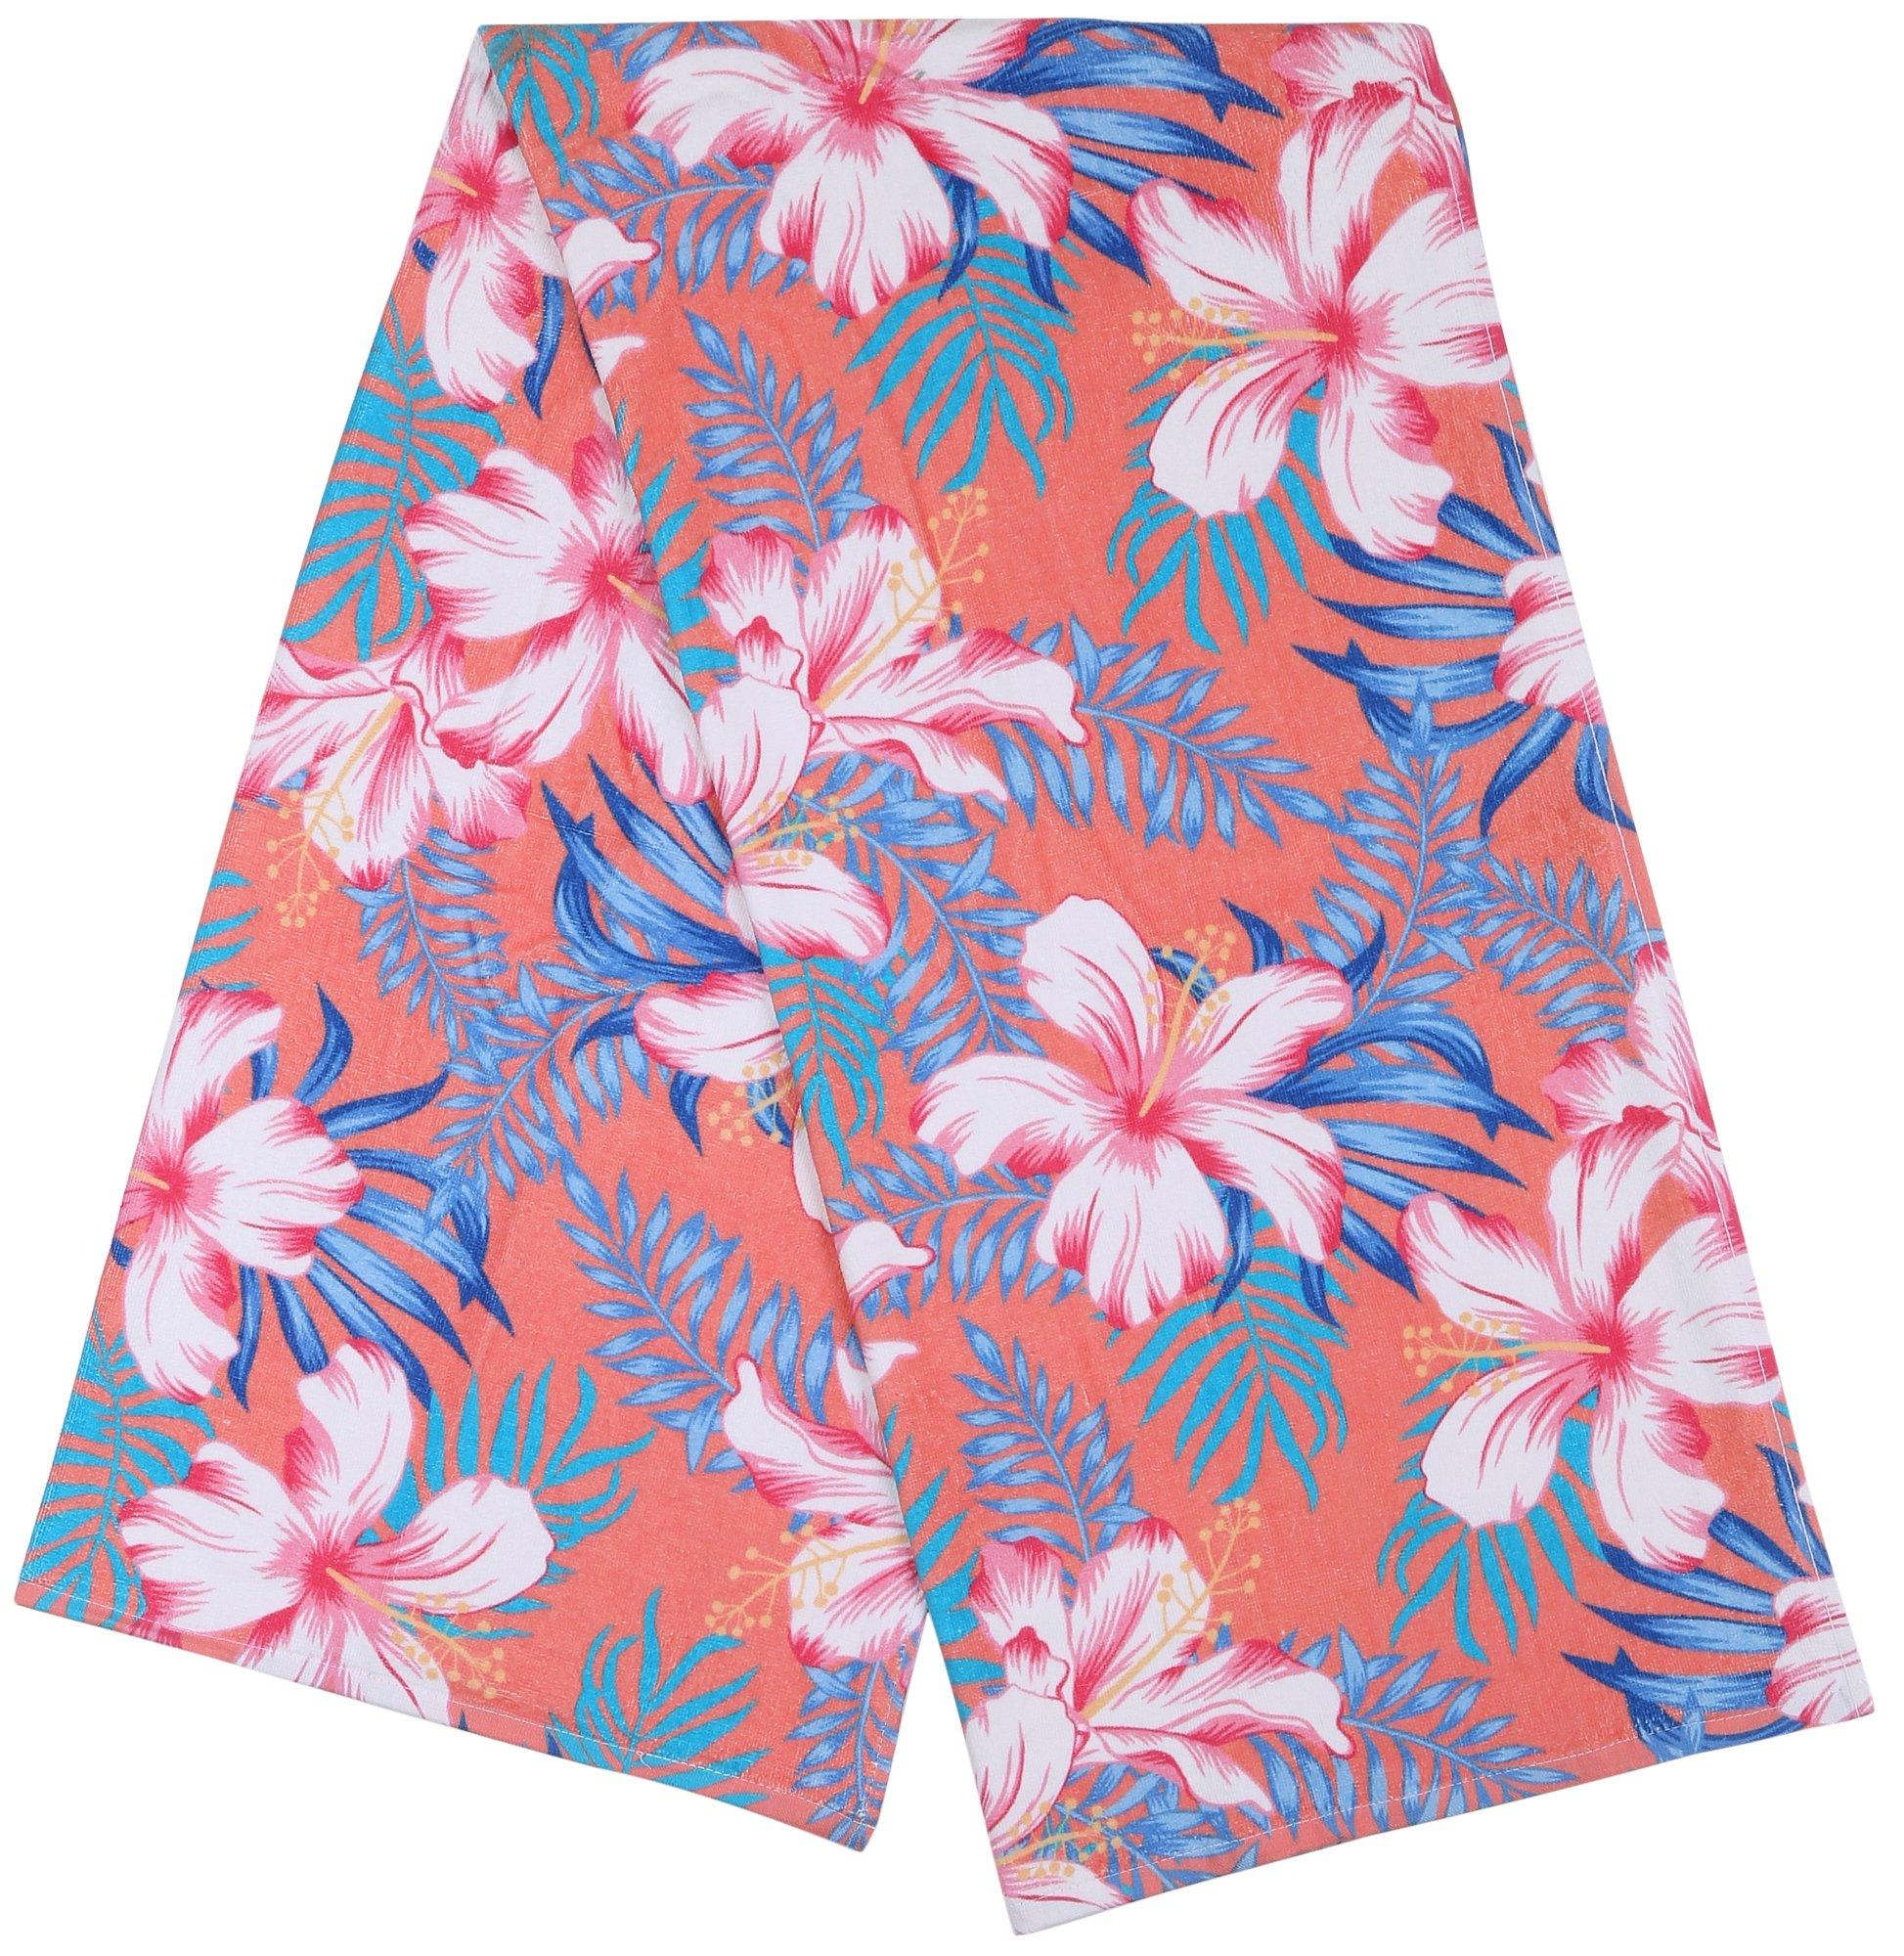 Hibiscus Bloom Beach Towel